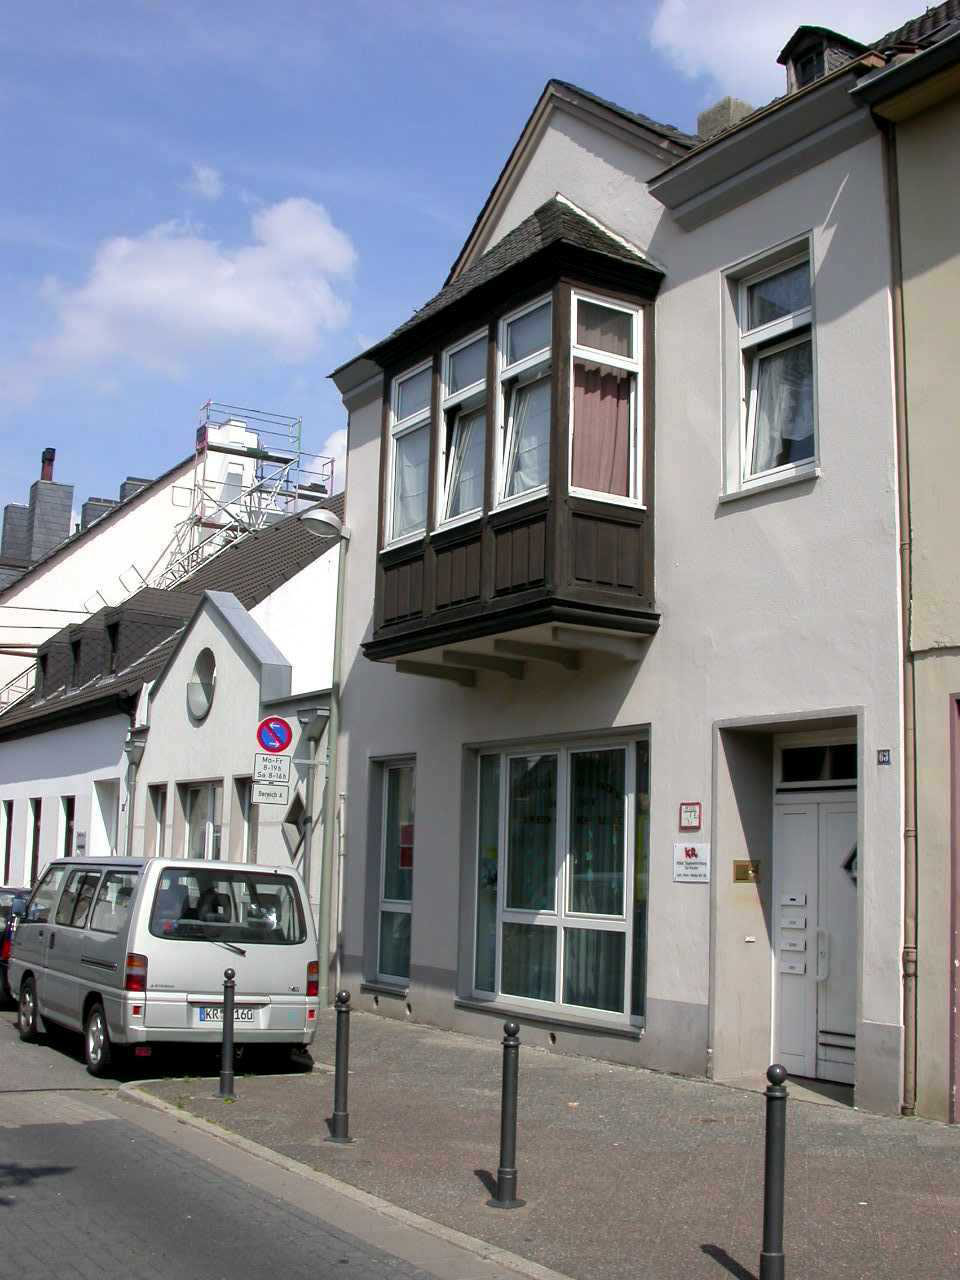 Der Eingang der städtischen Tageseinrichtung für Kinder / Familienzentrum Lutherische-Kirch-Straße, die in einem Wohnhaus untergebracht ist.